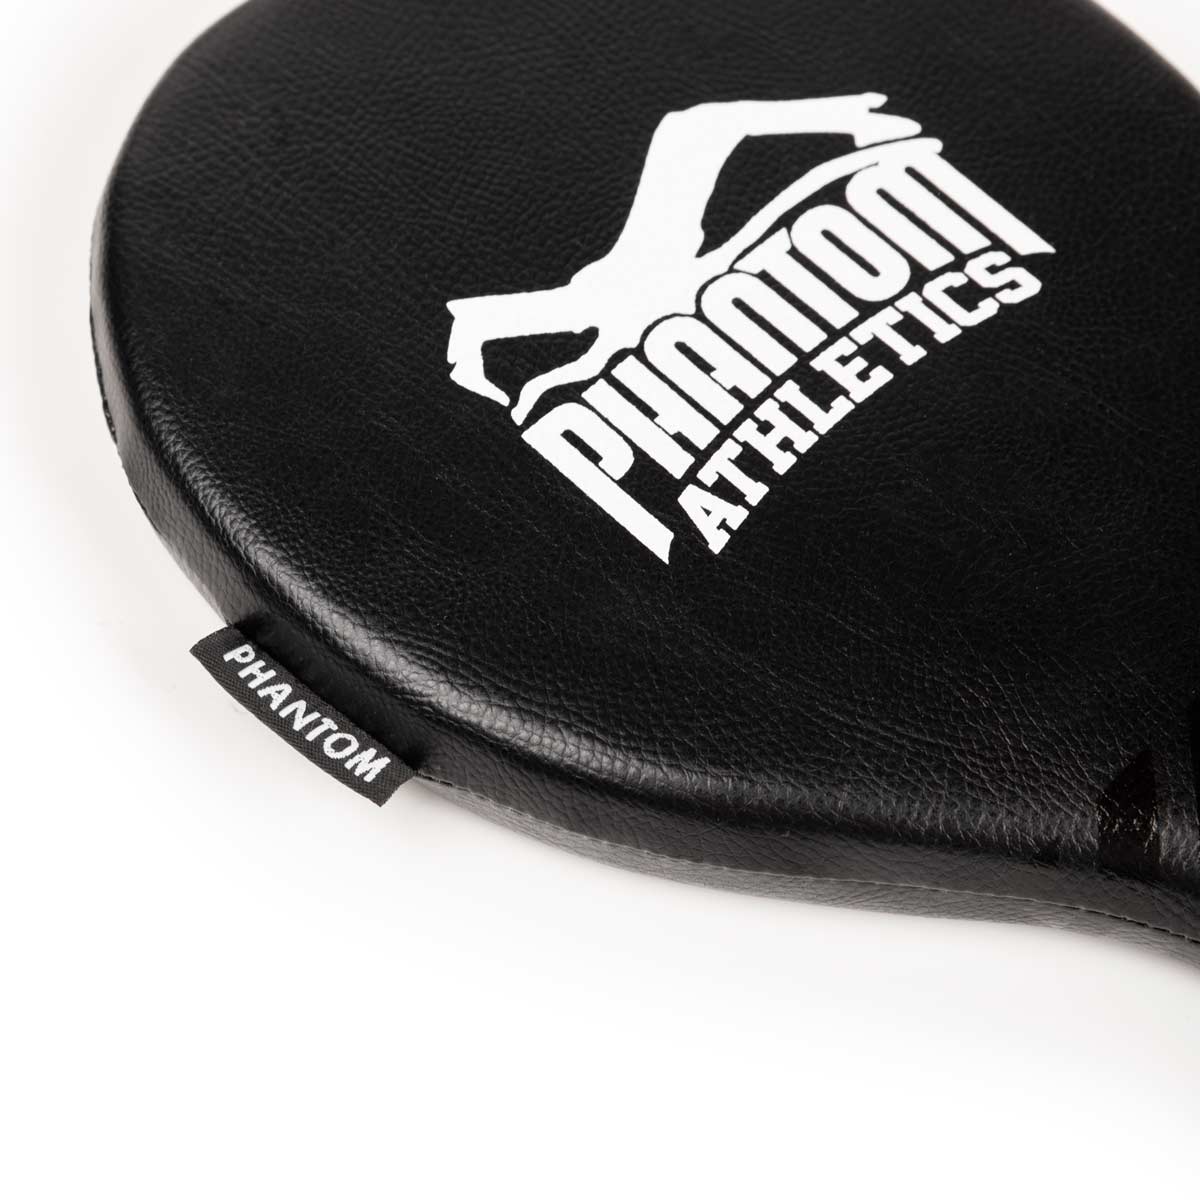 Die Phantom Boxing Paddles sind die idealen Schlagpratzen um Speed und Präzision zu trainieren. Egal ob MMA, Boxen, Kickboxen oder Muay Thai. Mit den Phantom Boxing Paddles bringst du dein Striking auf das nächste Level. Etliche Details unterstreichen die qualitative Bauweise. 